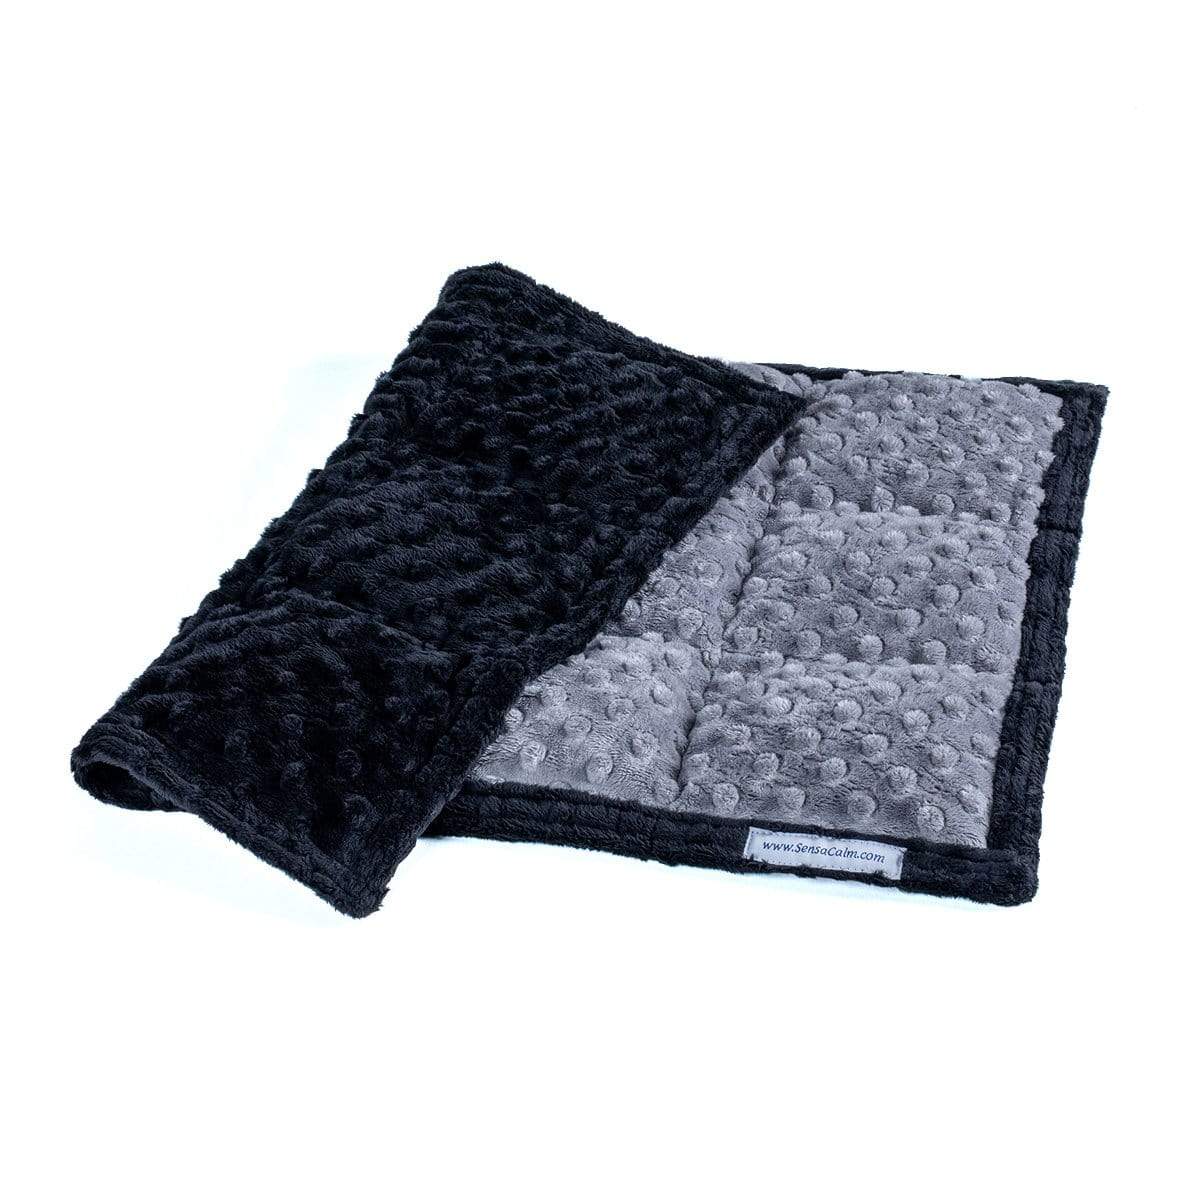 SensaCalm Lap Pads - 2 lb (12" W x 18" L) (Dimple Cuddle) Gray and Black